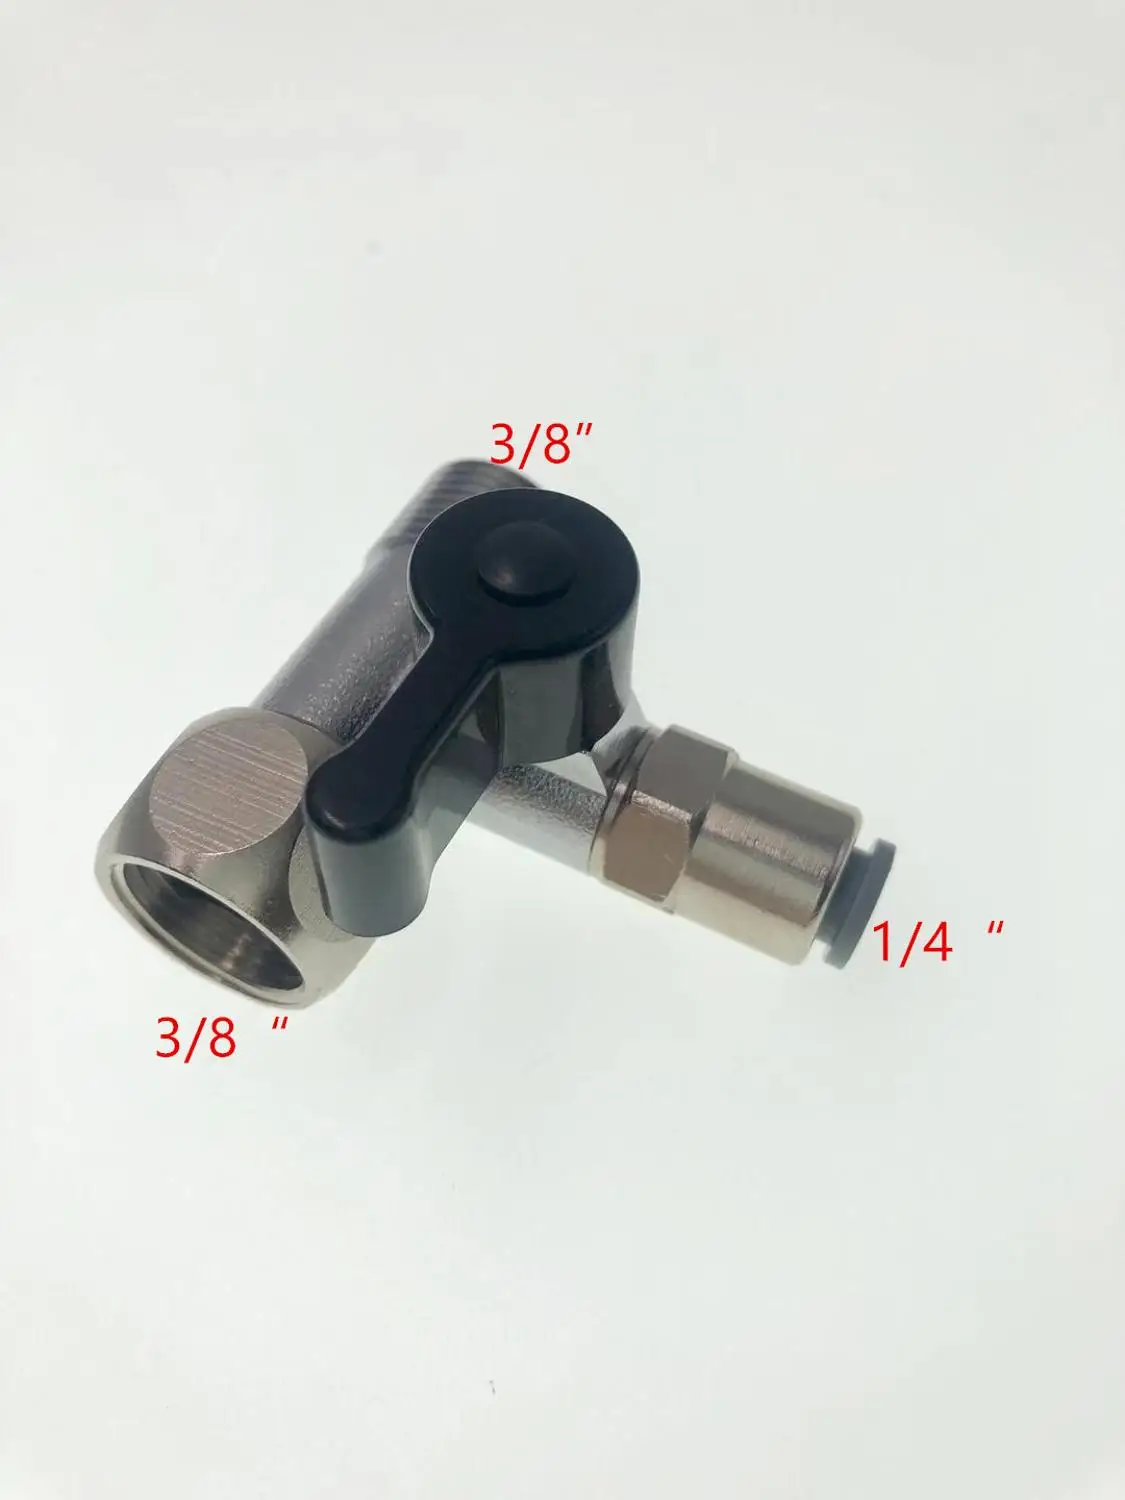 3/" до 1/4" бессвинцовый RO адаптер для подачи воды тройник шаровой кран запорный шаровой клапан соединение RO фильтр для воды